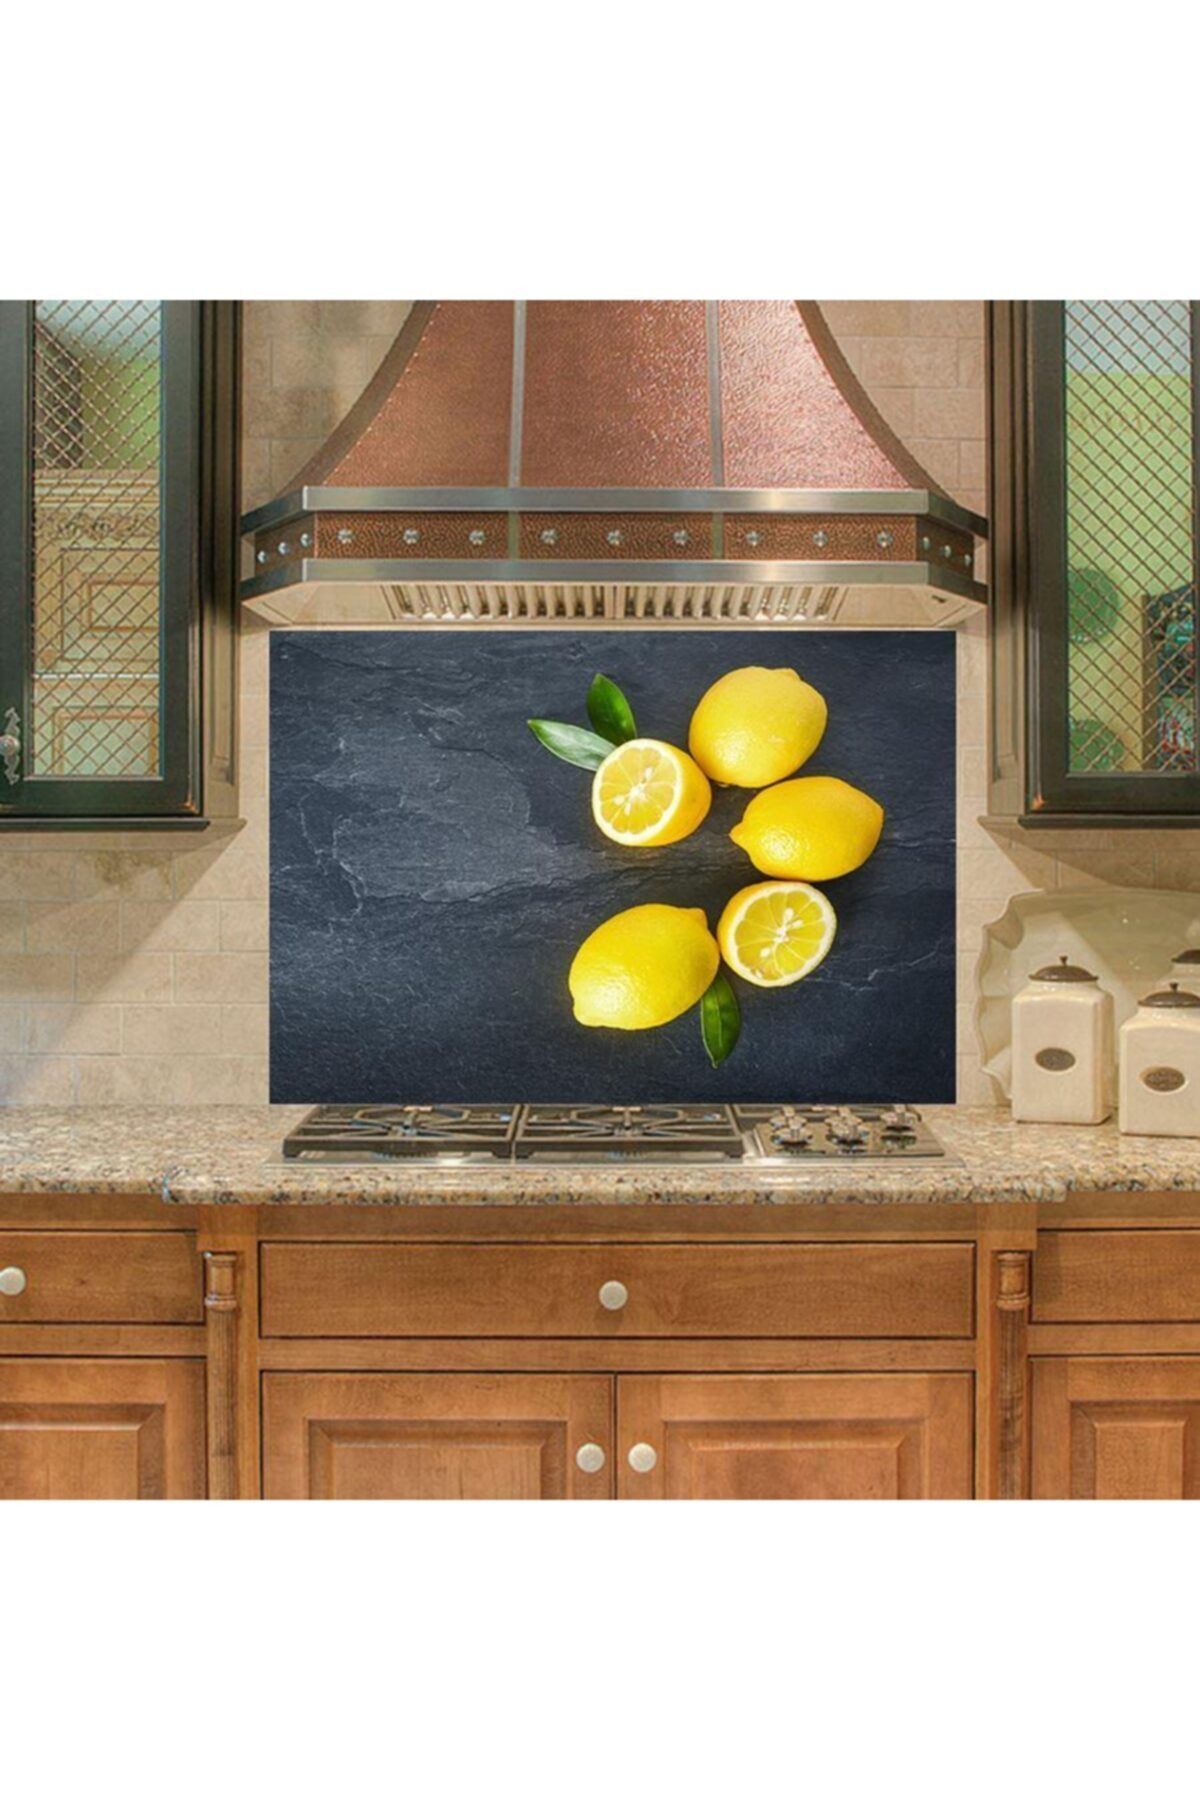 StickerArt Mutfak Duvar Tezgah Arası Ocak Arkası Sticker Kaplama Limon